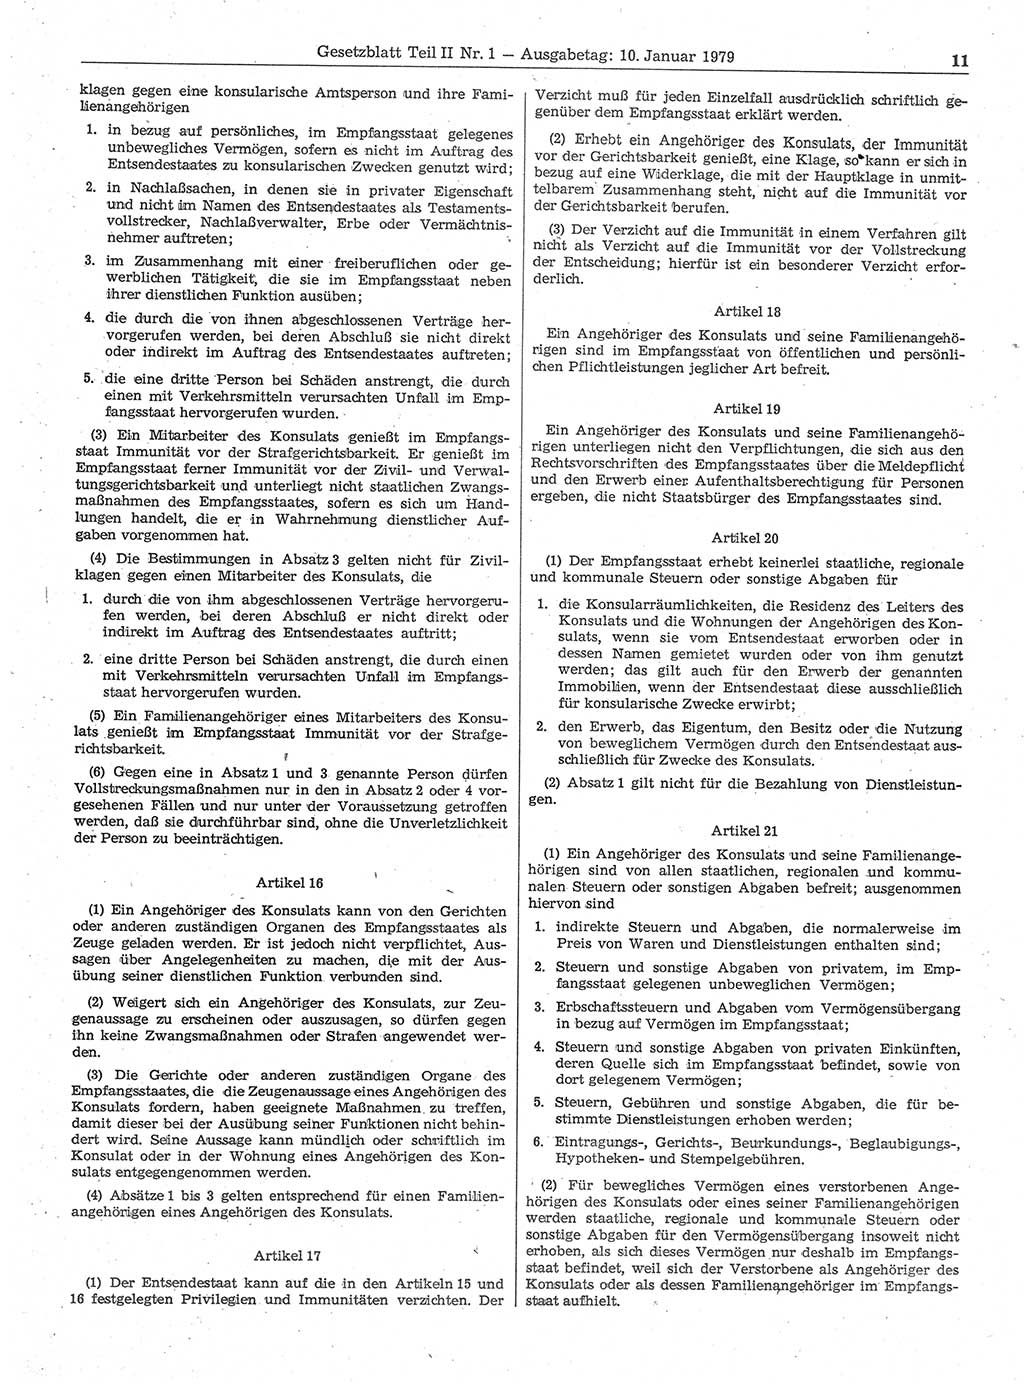 Gesetzblatt (GBl.) der Deutschen Demokratischen Republik (DDR) Teil ⅠⅠ 1979, Seite 11 (GBl. DDR ⅠⅠ 1979, S. 11)